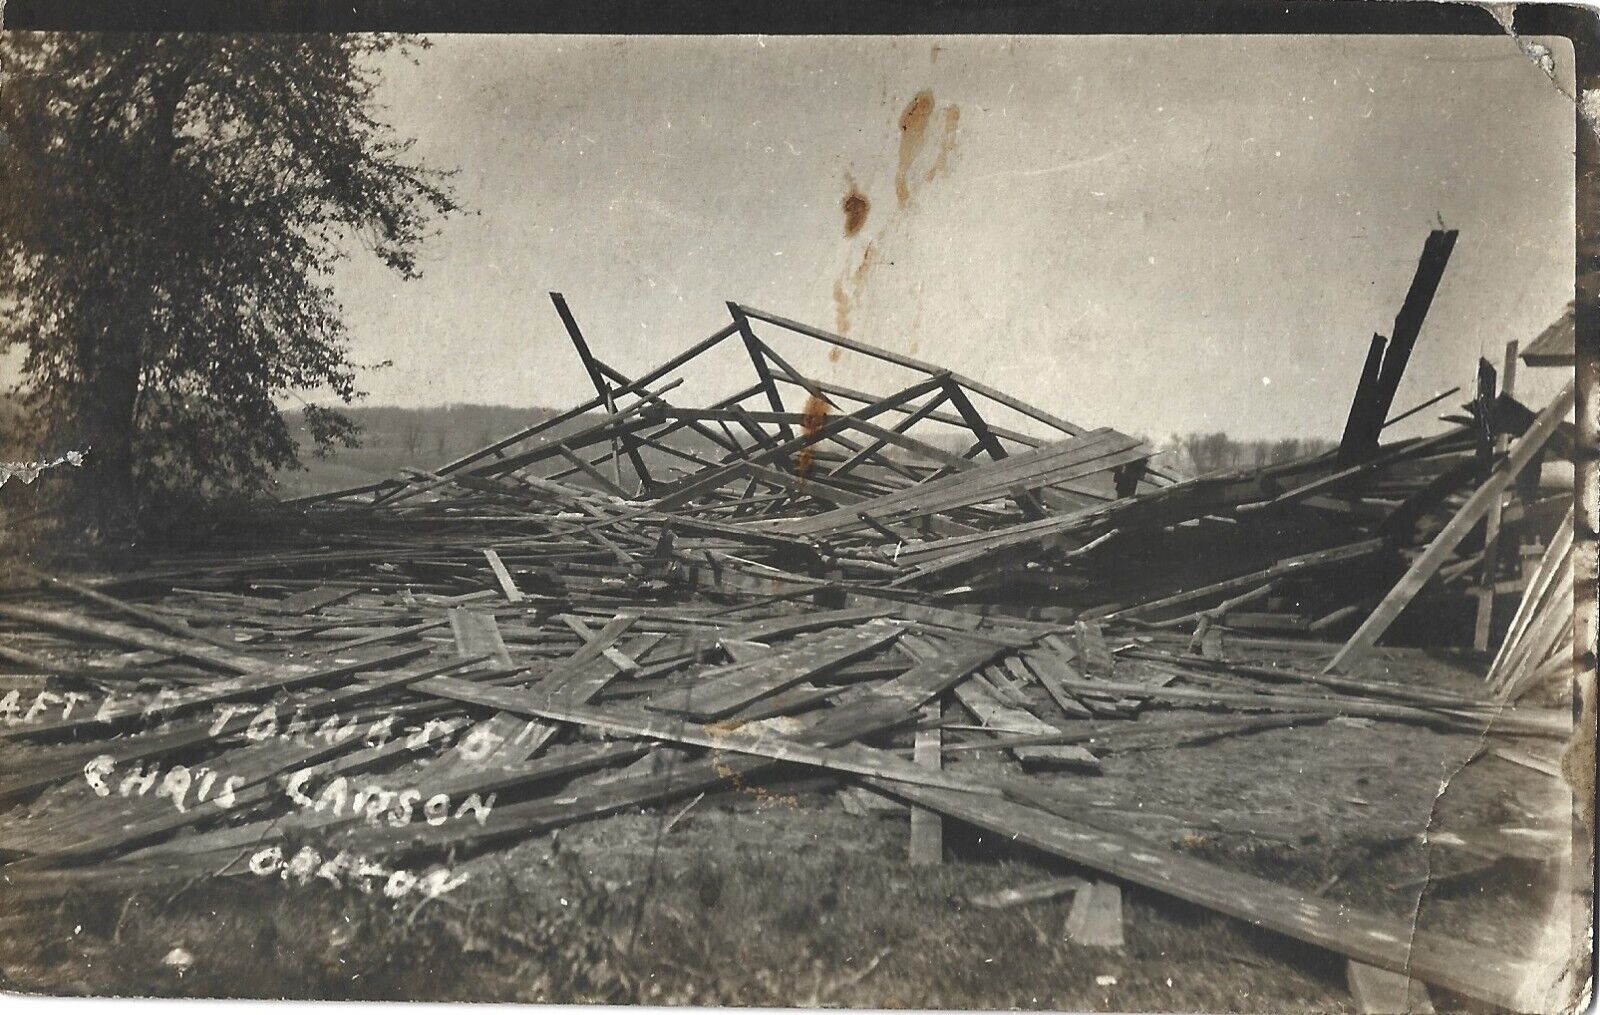 Demolished barn/home after tornado, Stoughton WI; nice 1917 RPPC